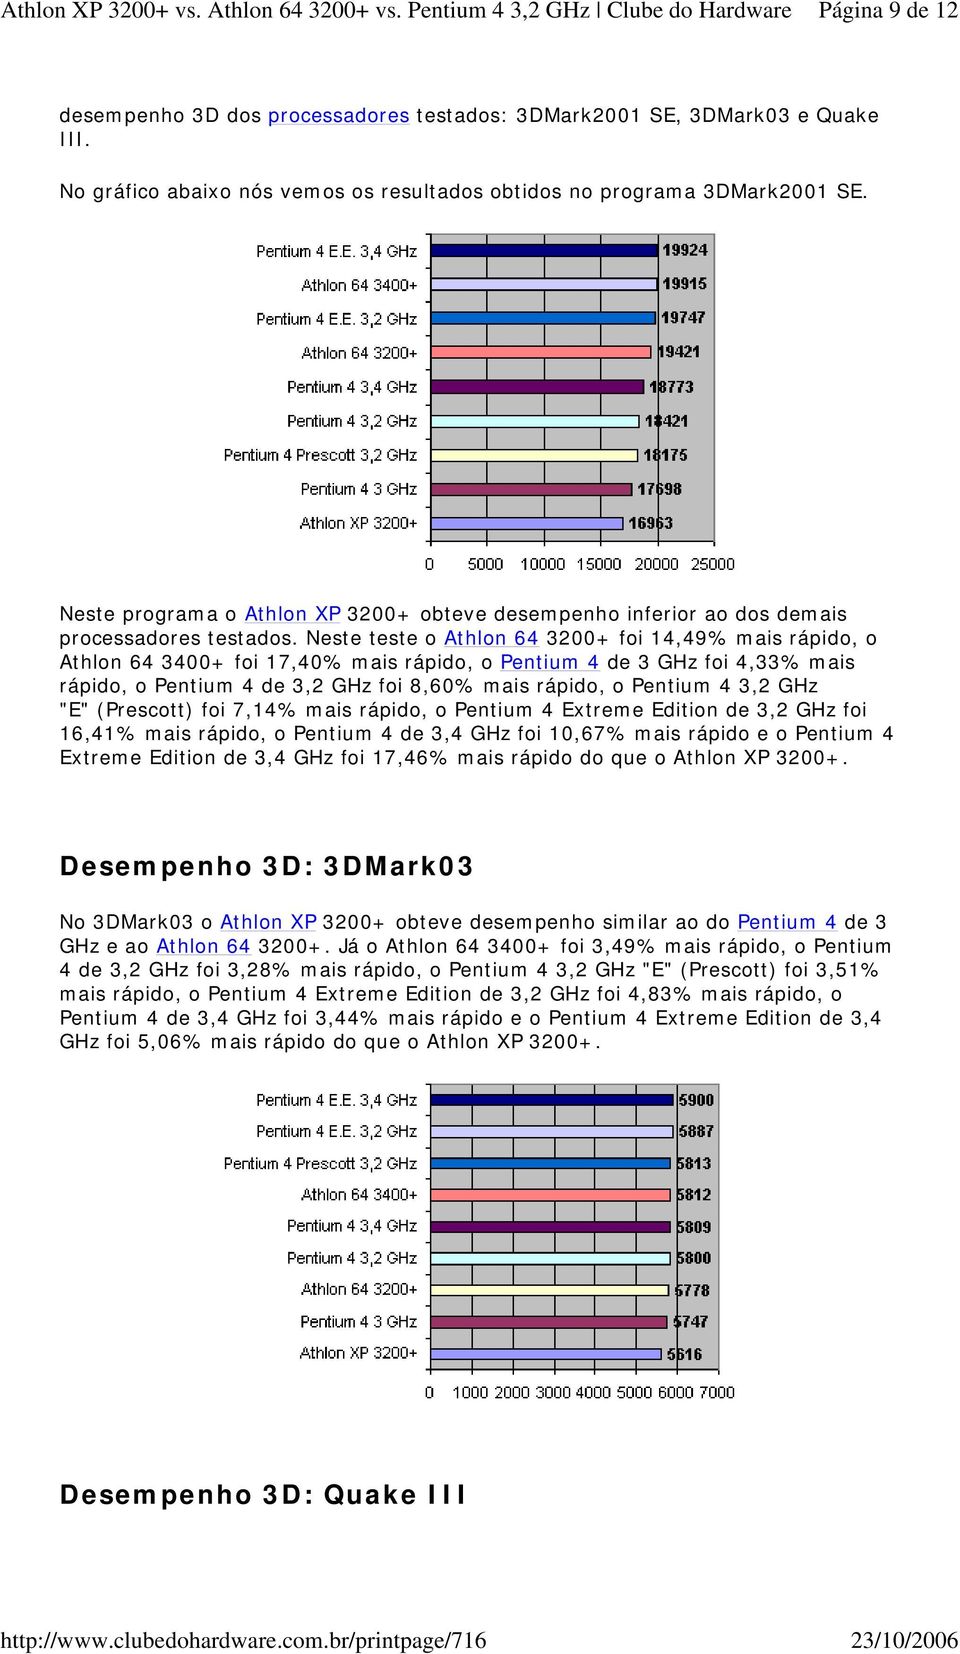 Neste teste o Athlon 64 3200+ foi 14,49% mais rápido, o Athlon 64 3400+ foi 17,40% mais rápido, o Pentium 4 de 3 GHz foi 4,33% mais rápido, o Pentium 4 de 3,2 GHz foi 8,60% mais rápido, o Pentium 4